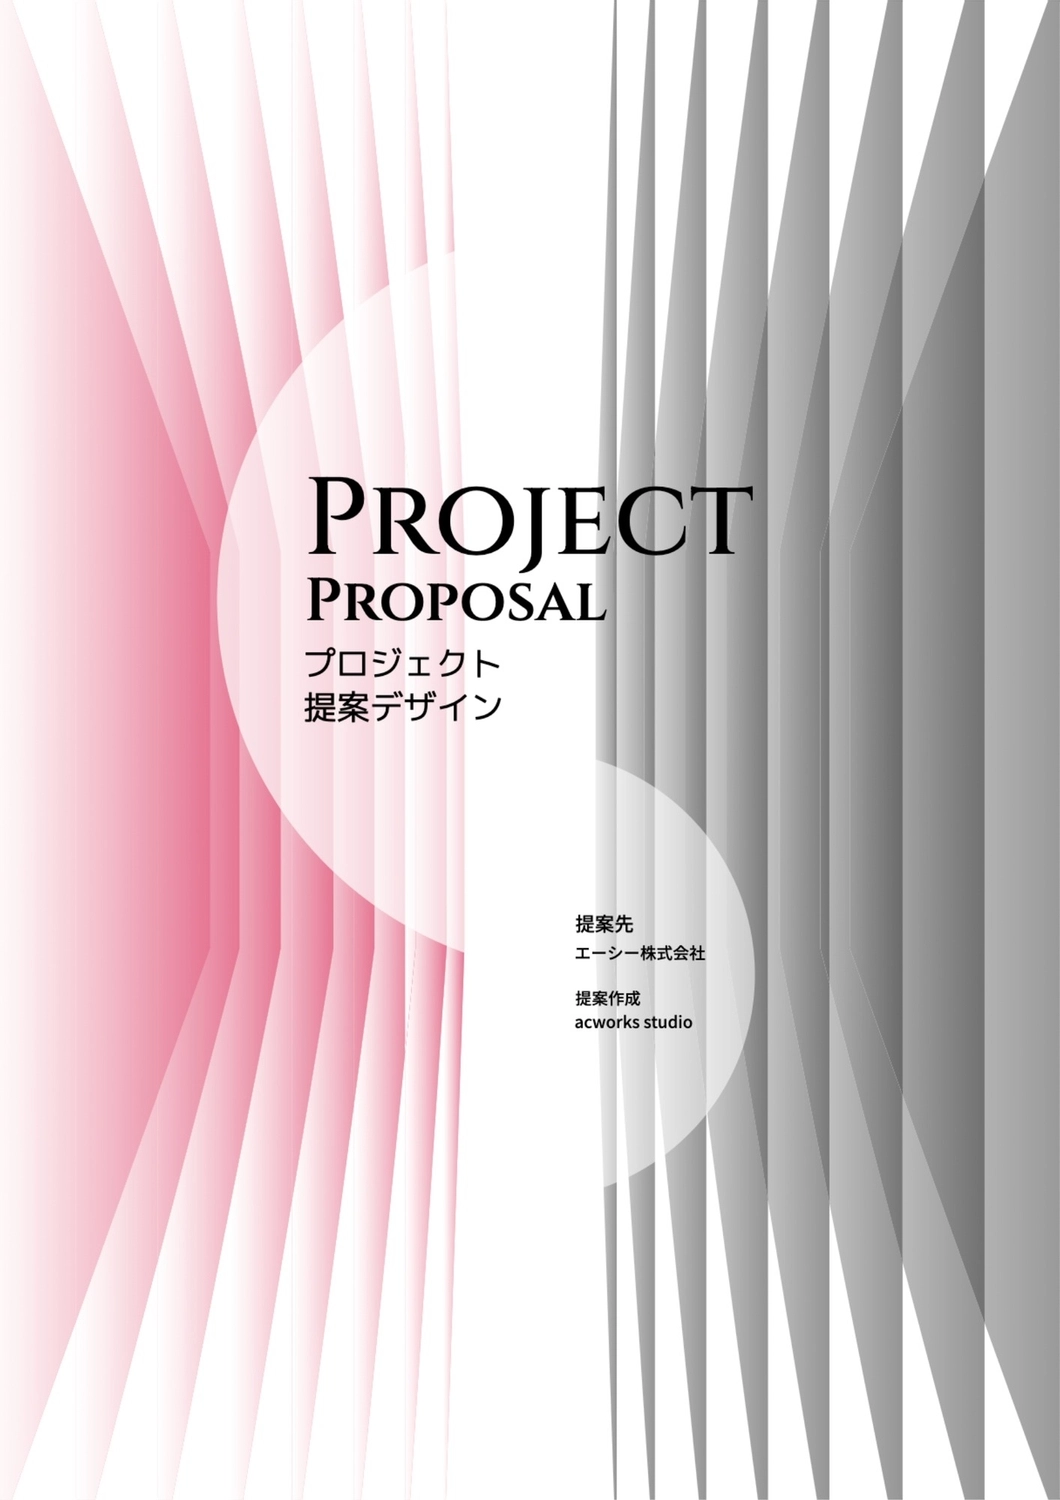 プロジェクト提案デザイン, Hồng, tạo ra, thiết kế, Tài liệu A4 mẫu